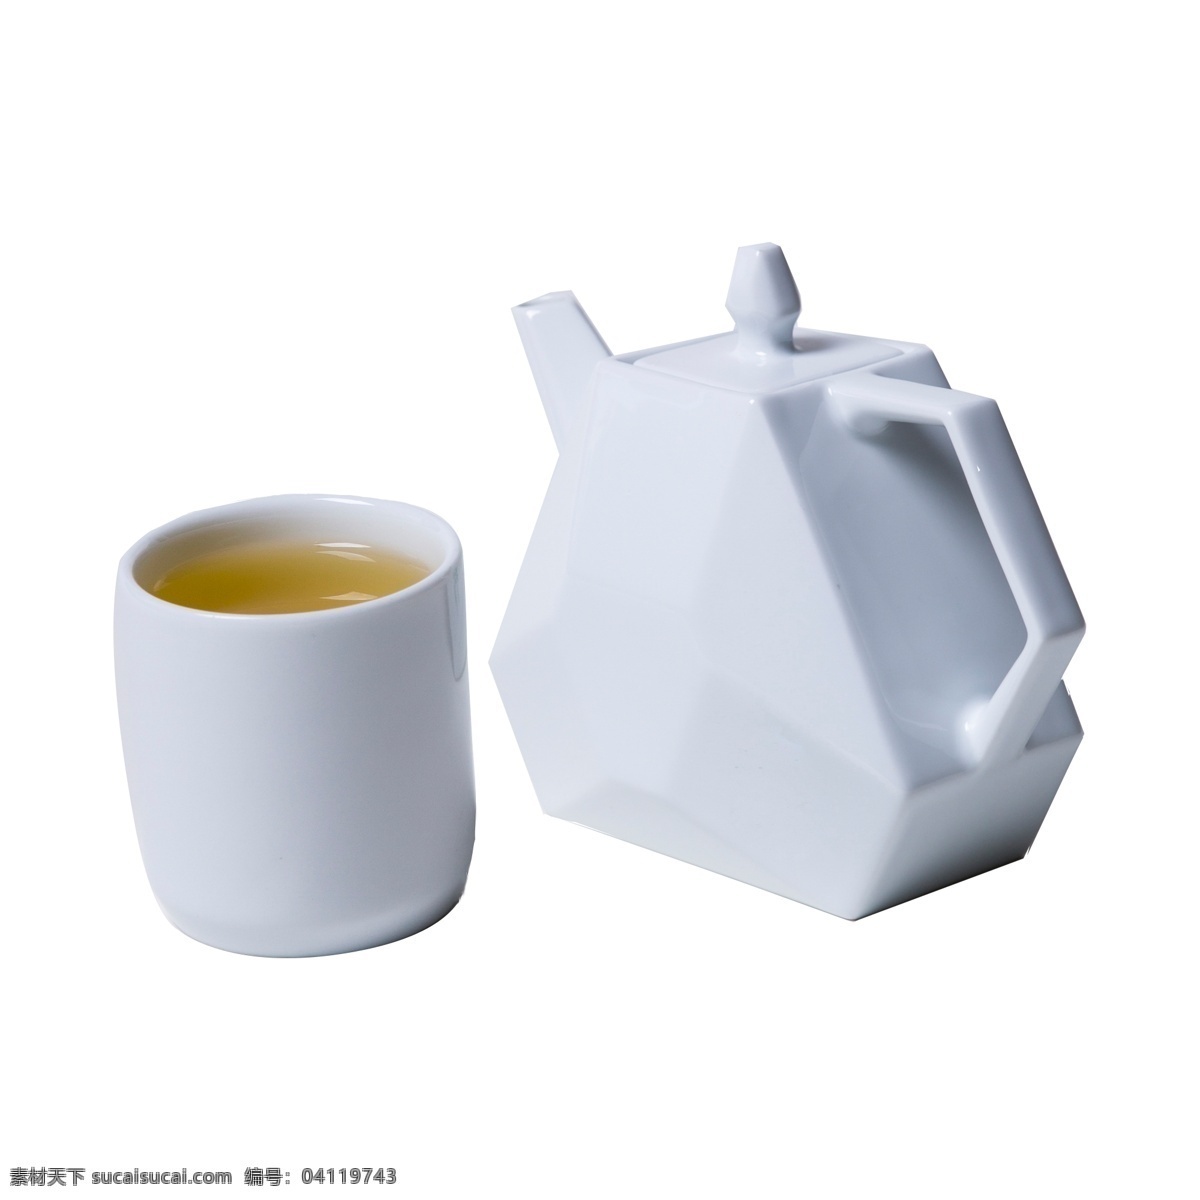 白色 创意 茶具 组合 元素 盖子 圆柱 杯子 喝的 几何 三角形 纹理 质感 把手 圆润 立体